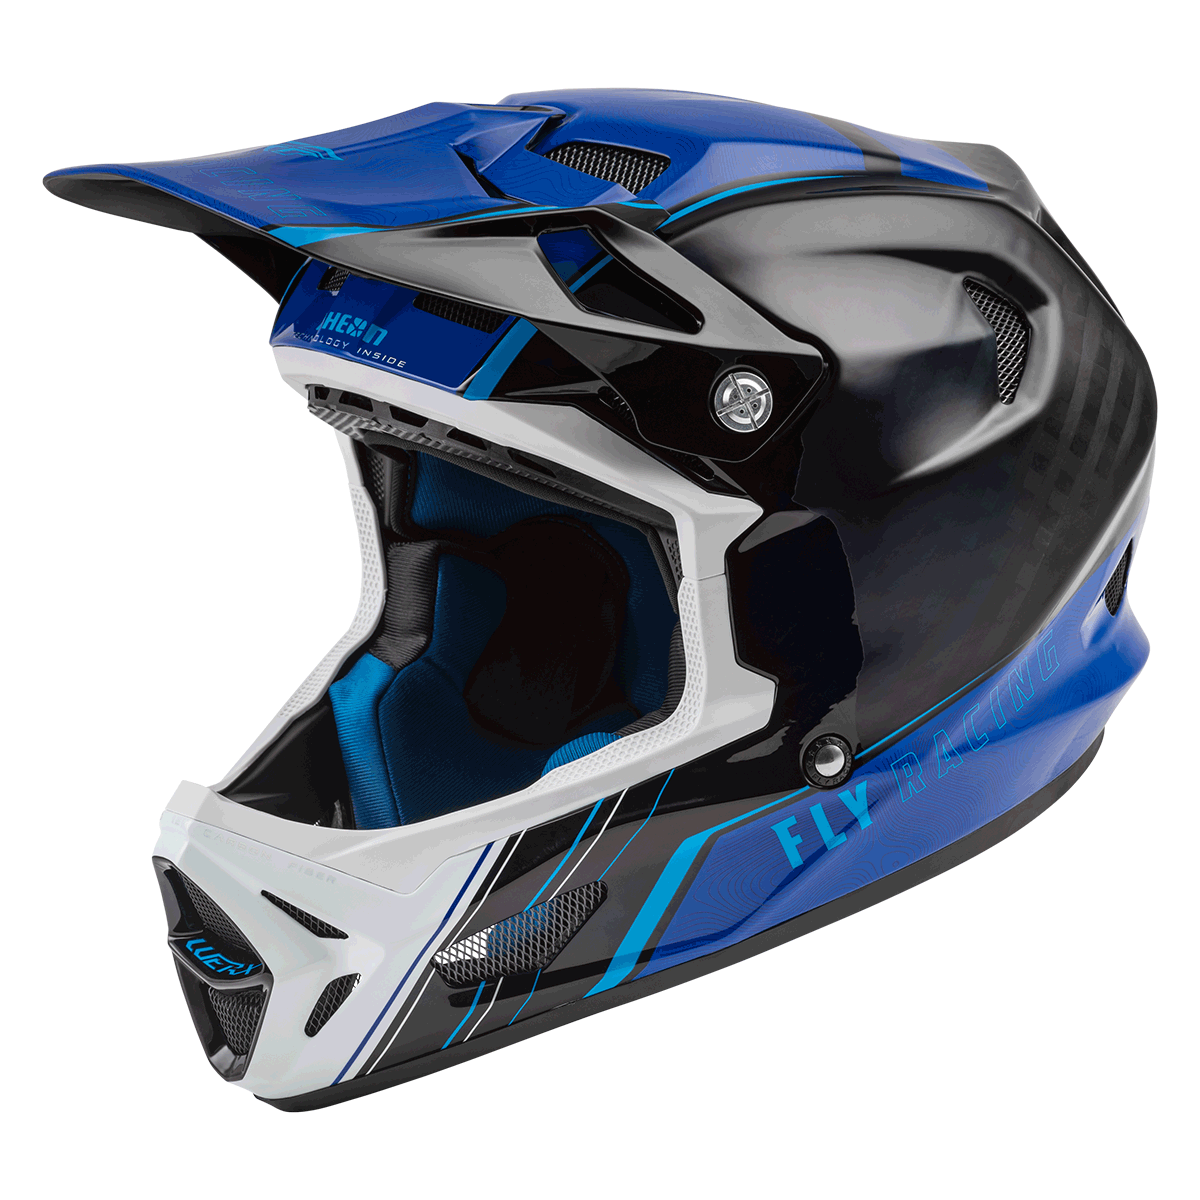 FLY Racing Werx-R Carbon Mountain Bike Helmet 73-9223M